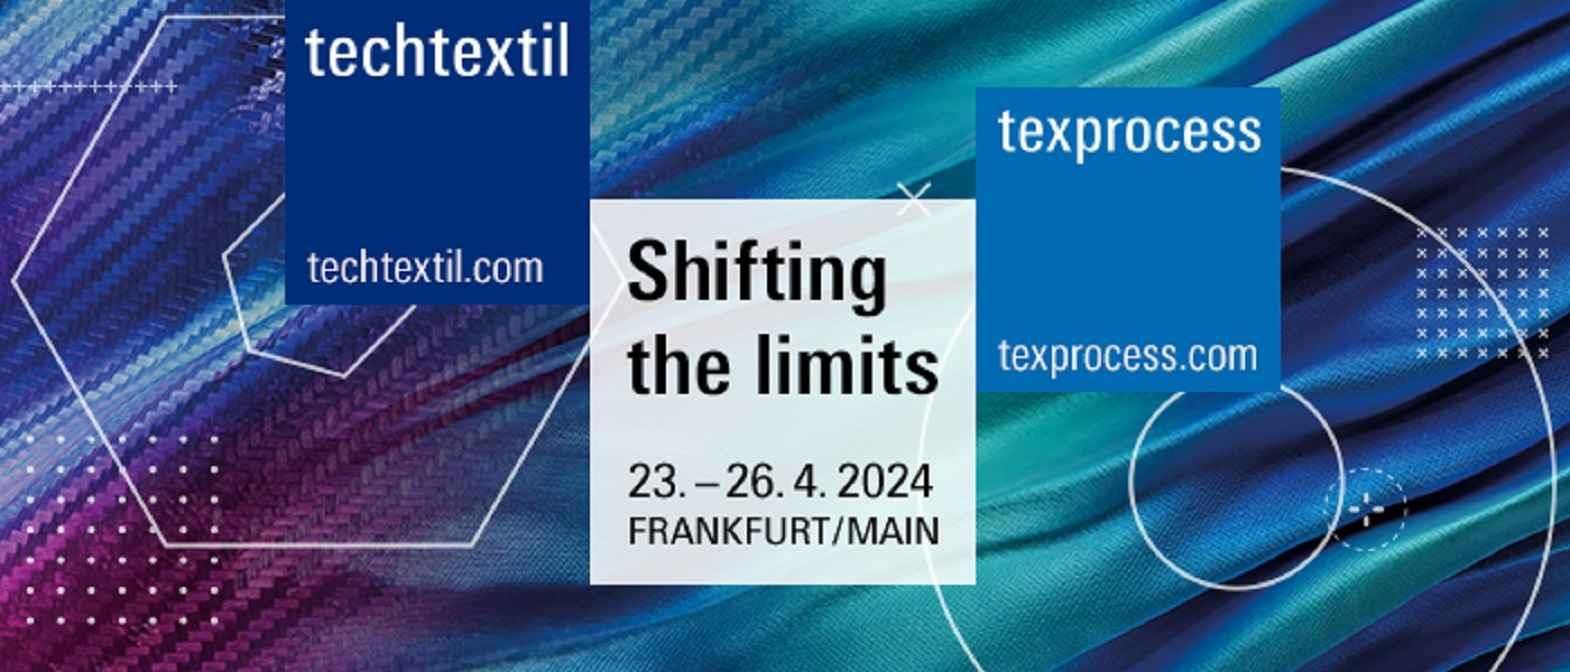 Techtextil and Texprocess